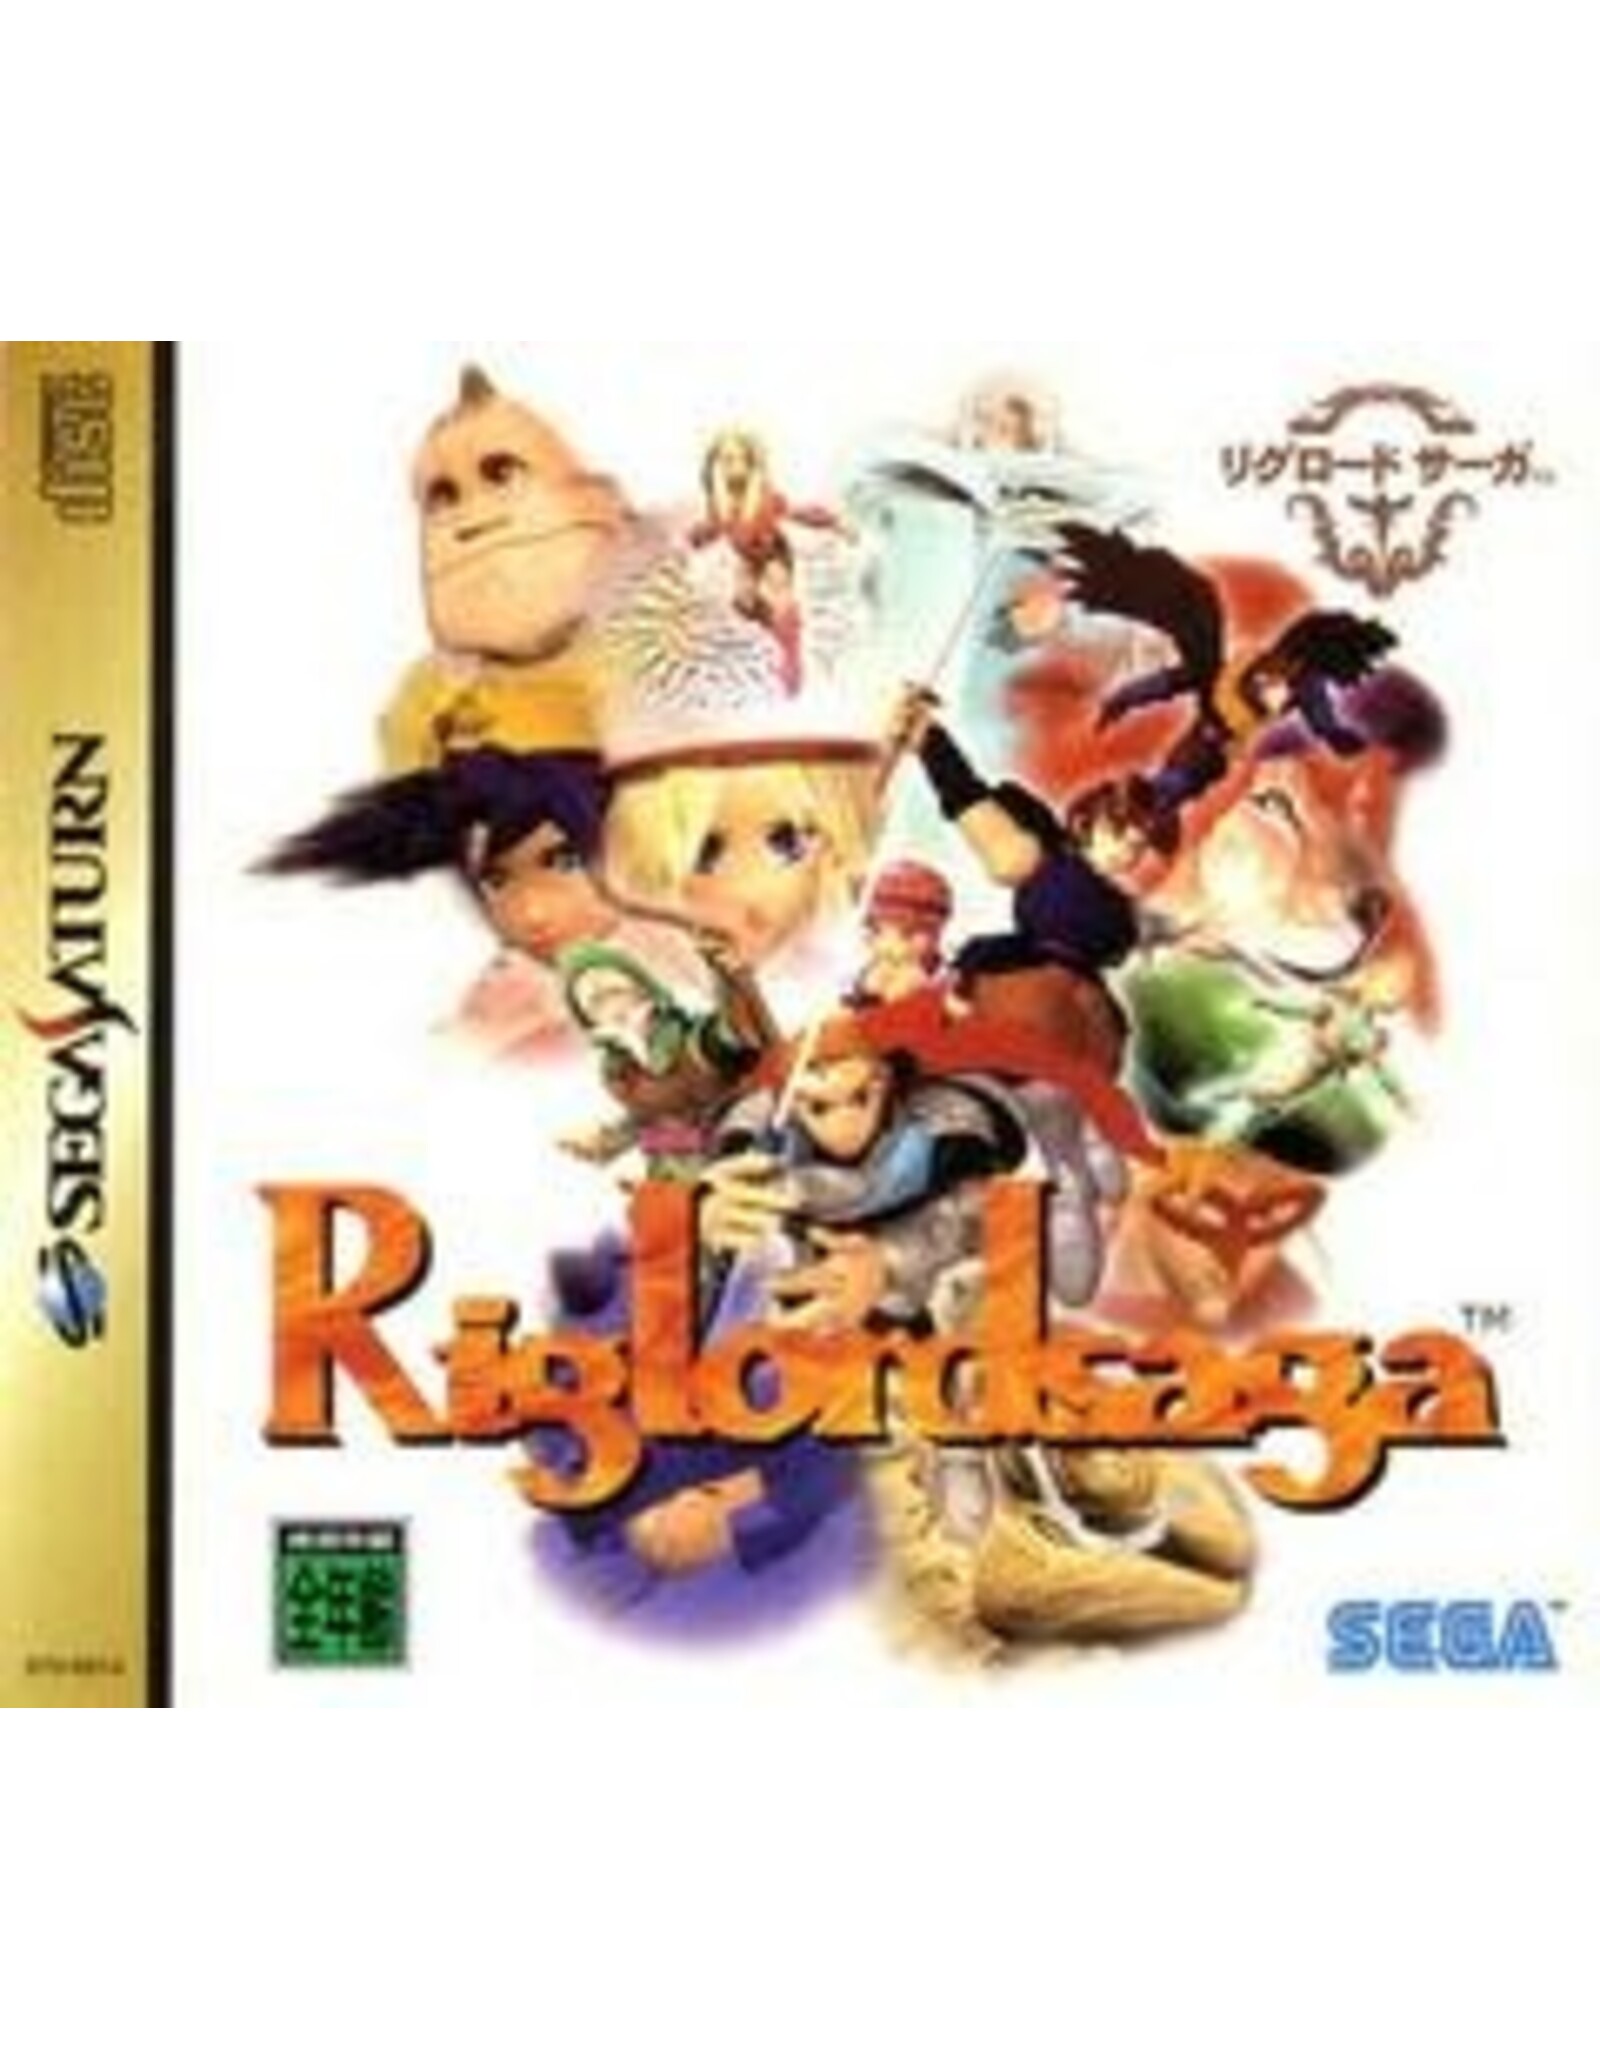 Sega Saturn Riglordsaga - JP Import (Used)